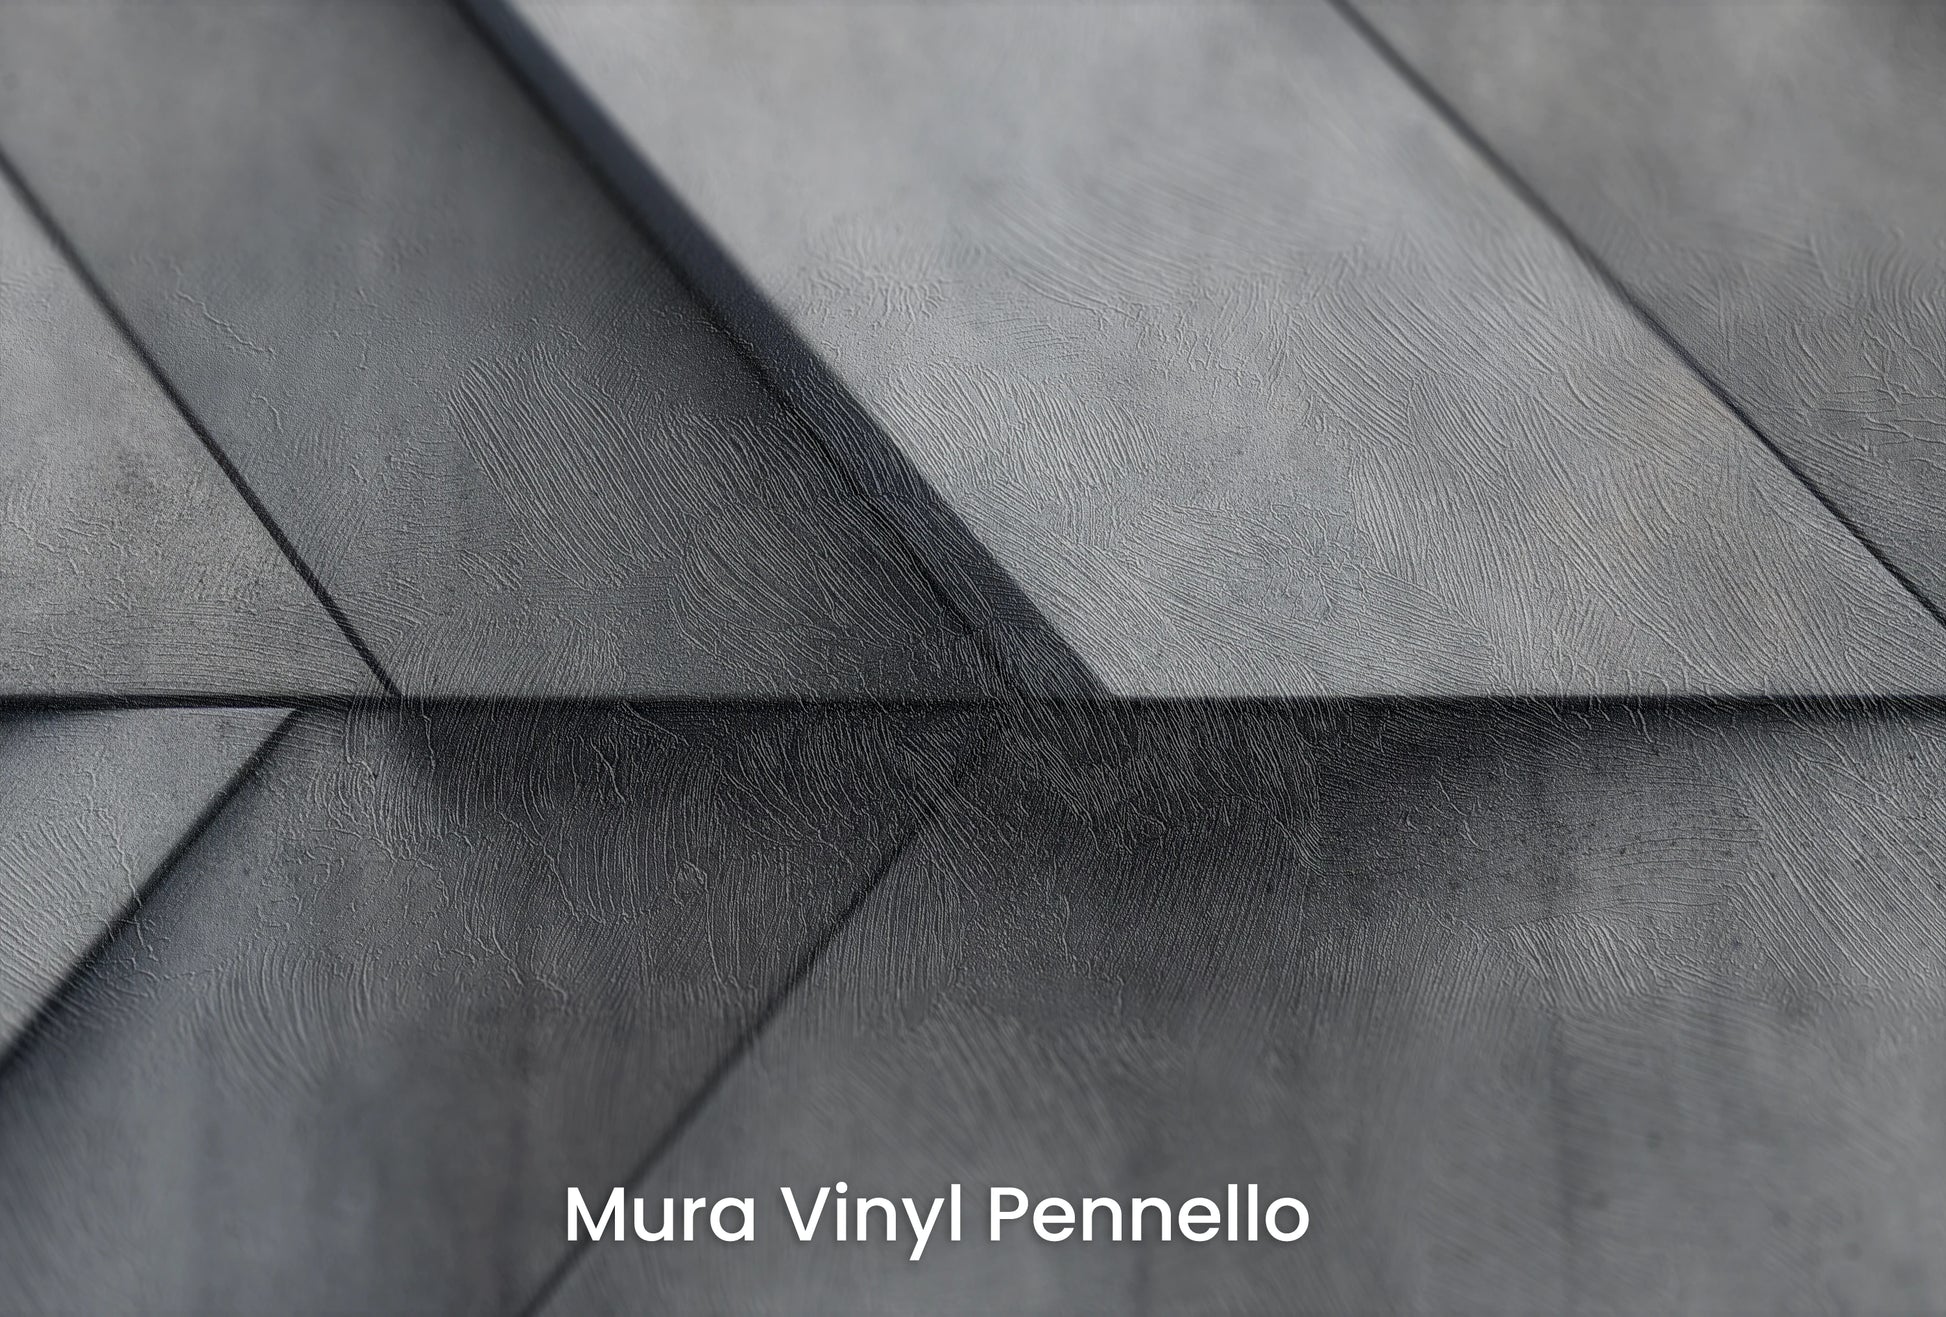 Zbliżenie na artystyczną fototapetę o nazwie Crossed Slates na podłożu Mura Vinyl Pennello - faktura pociągnięć pędzla malarskiego.